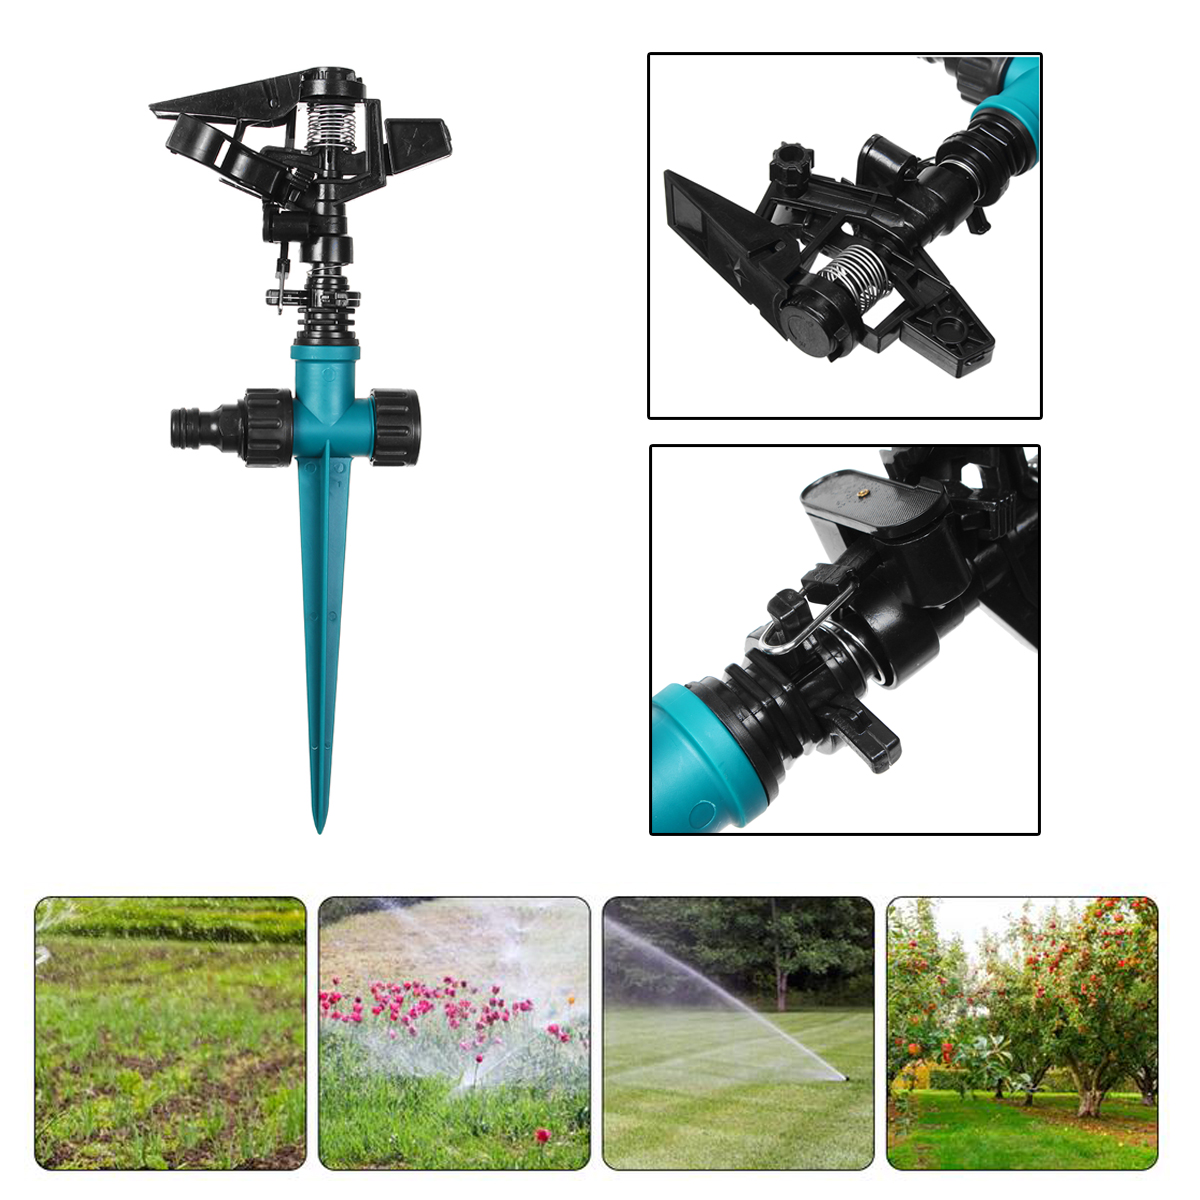 

1/2 Water Farm Sprinklers Rocker Nozzle Lawns Garden Watering Irrigation System